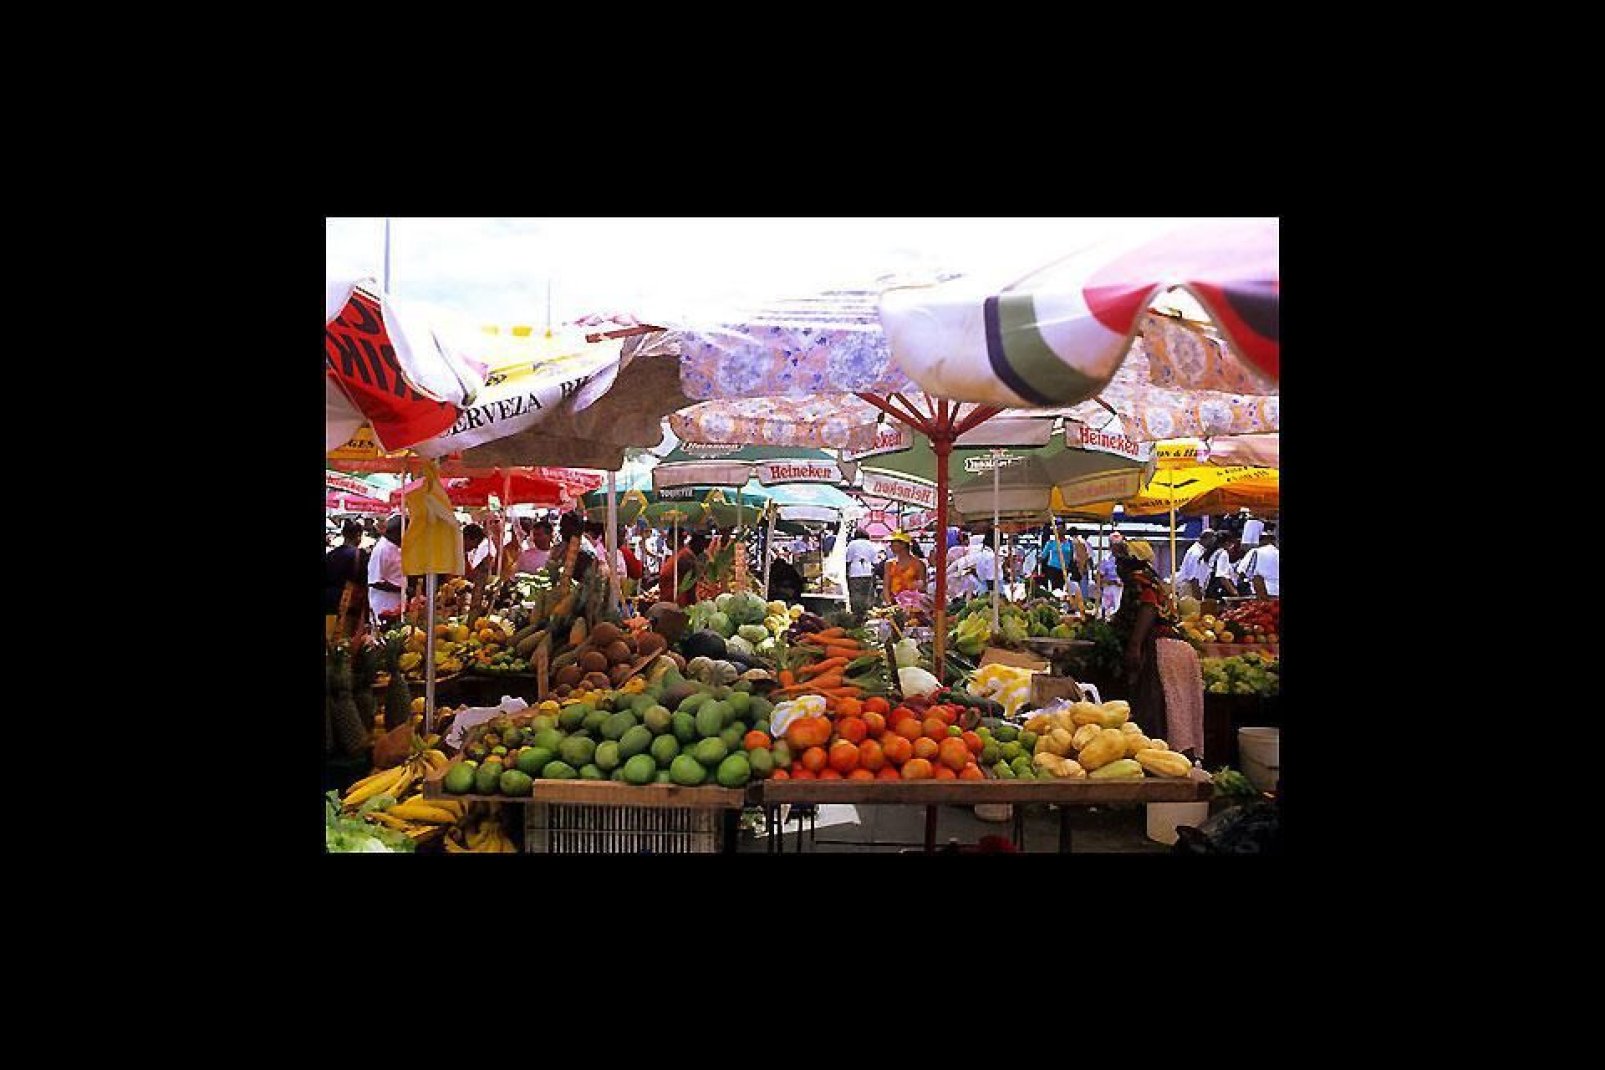 Al mercato della capitale troverete tutti i prodotti locali della regione. Assolutamente da non perdere se amate i frutti tropicali!